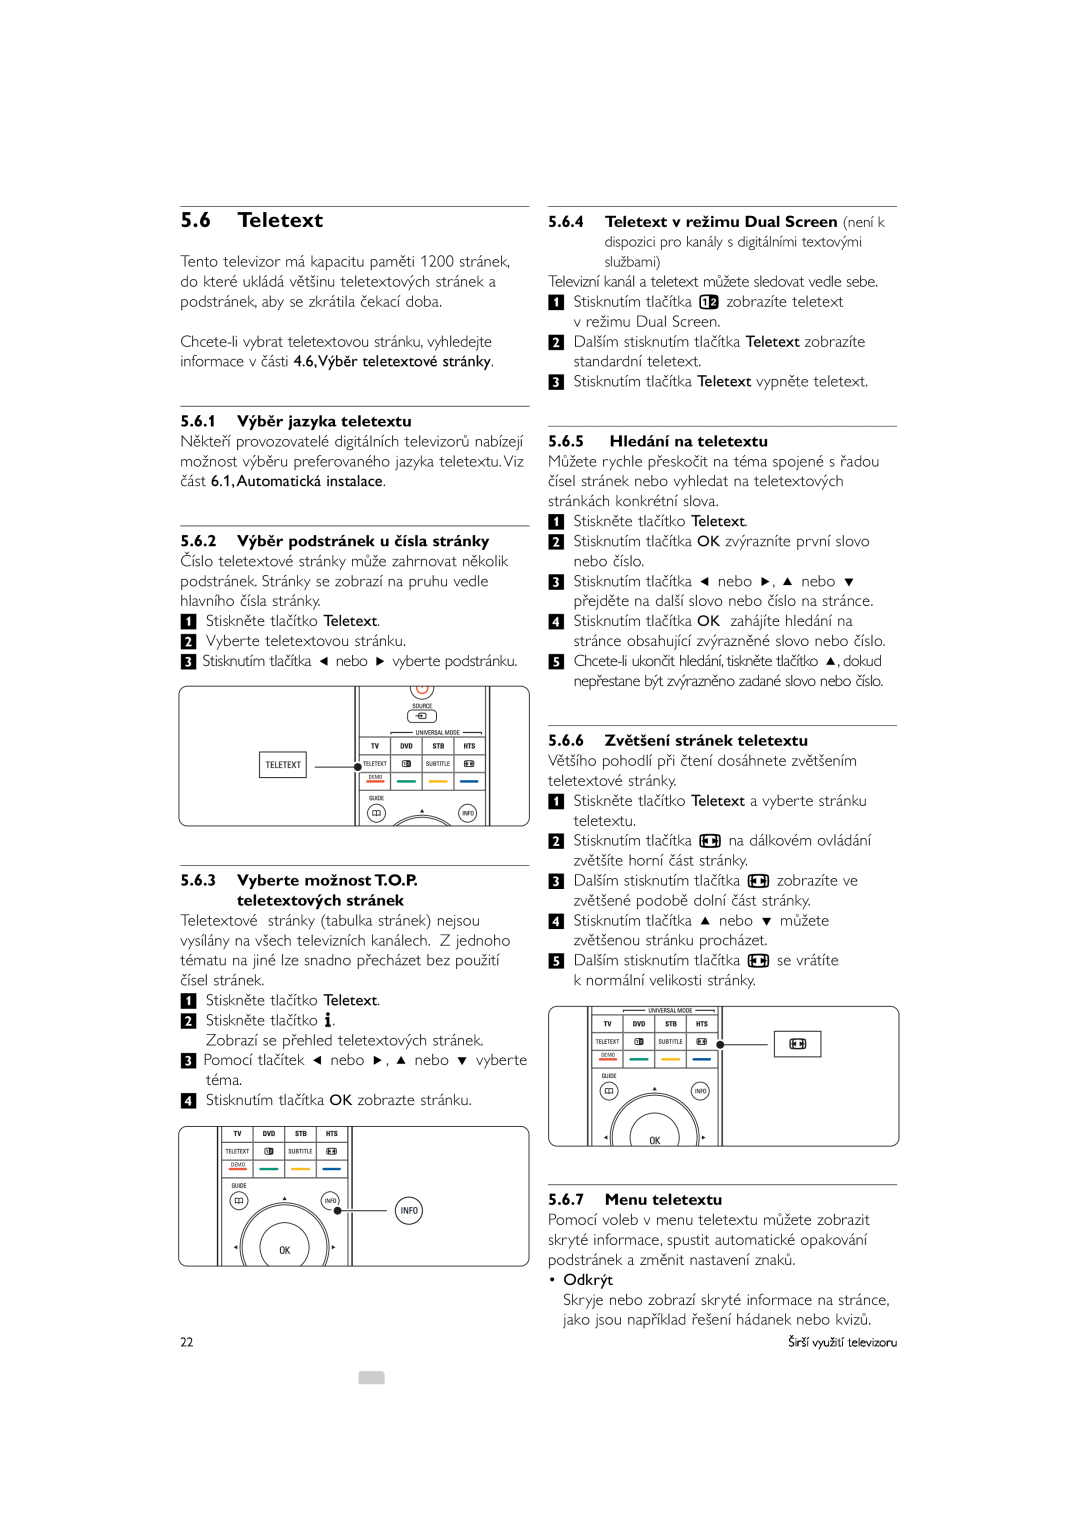 Philips 42PFL9903H/10 manual 5.6Teletext, 5.6.1 Výběr jazyka teletextu, 5.6.3Vyberte možnost T.O.P teletextových stránek 